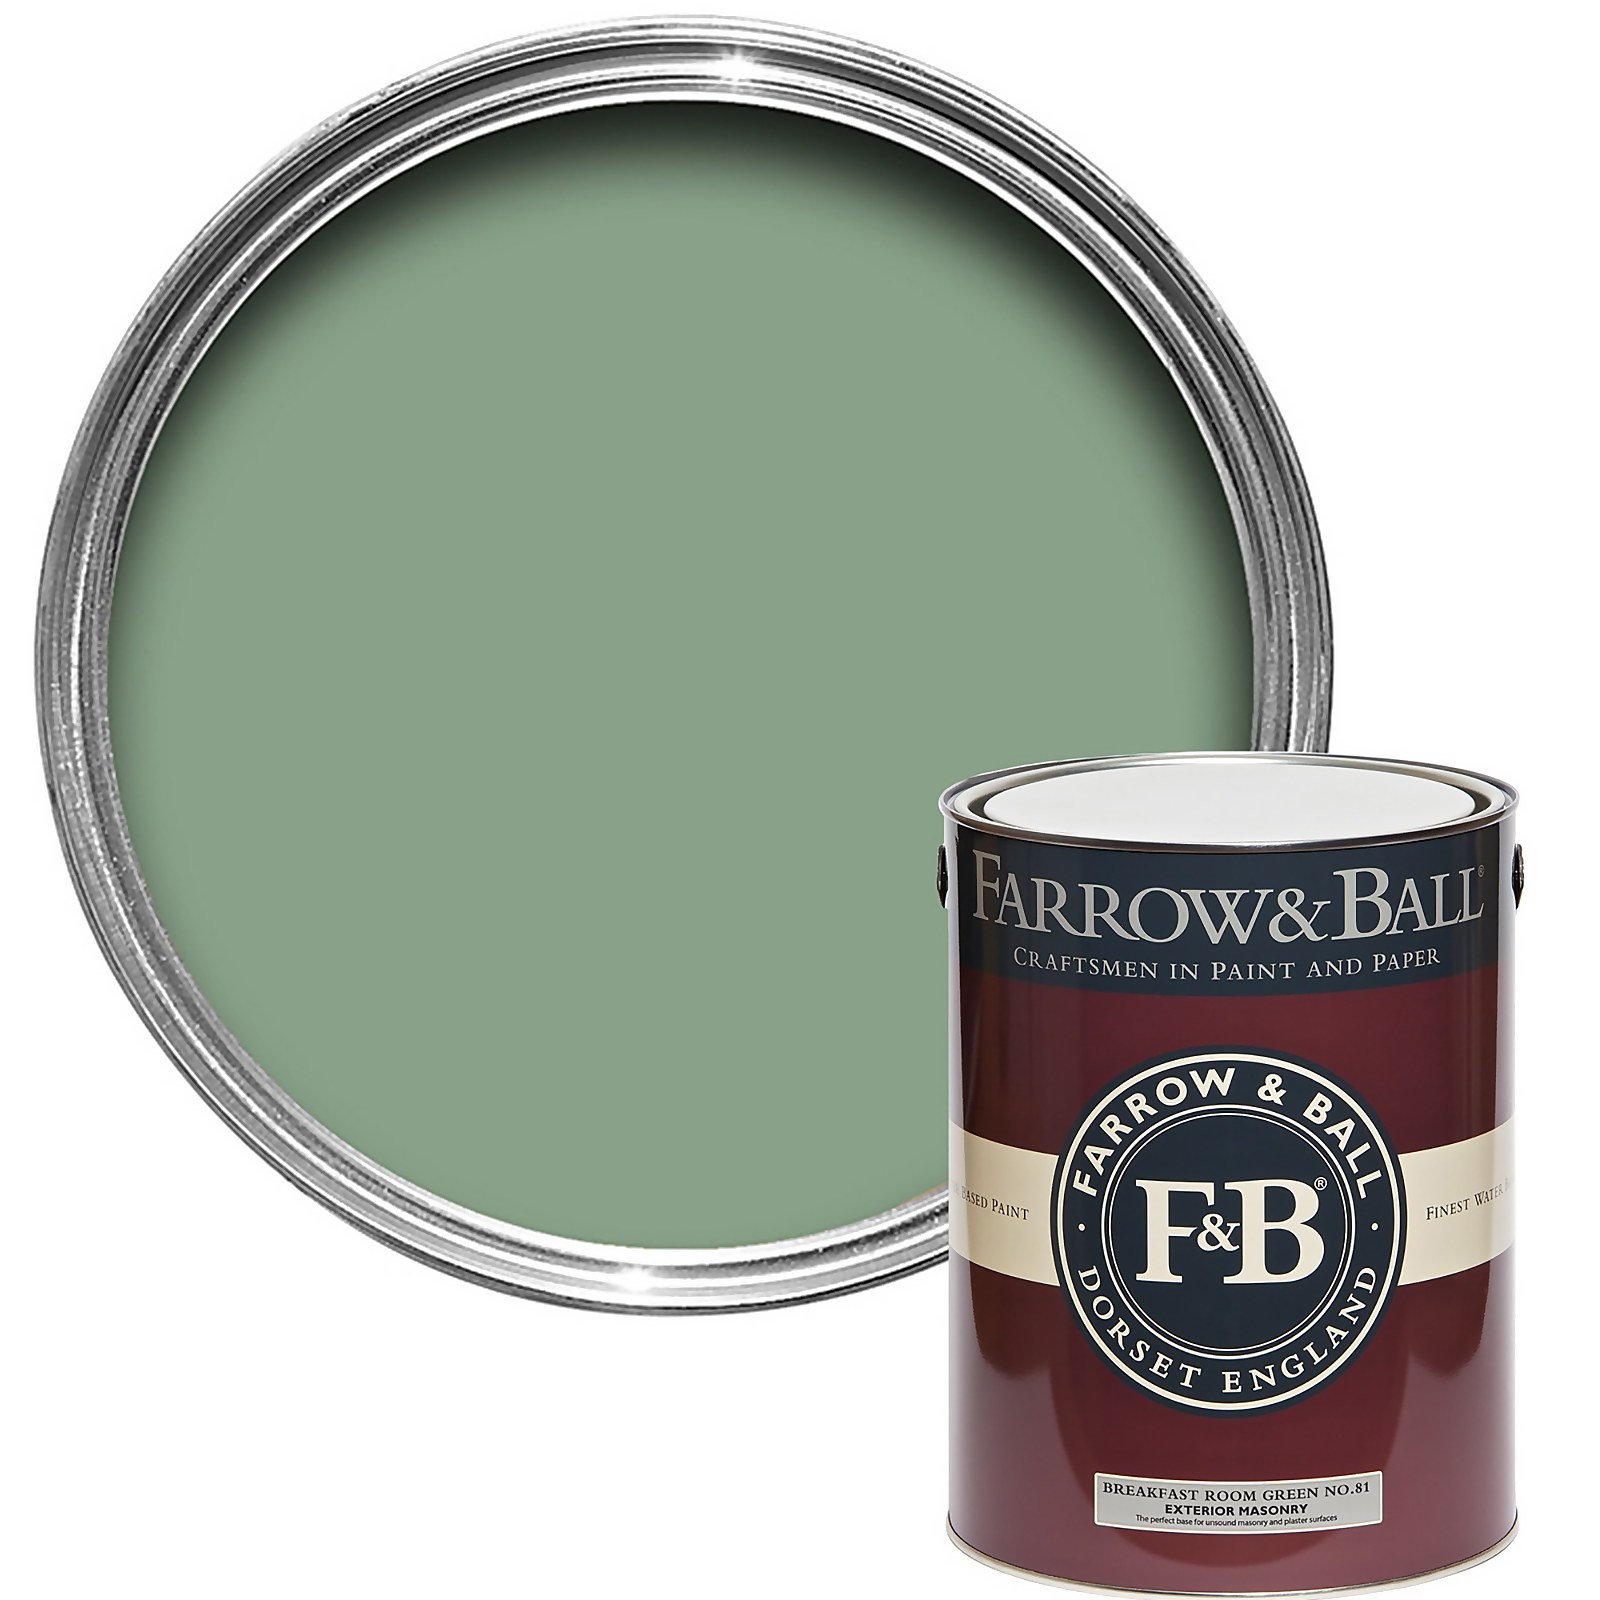 Farrow & Ball Exterior Masonry Paint Breakfast Room Green No.81 - 5L